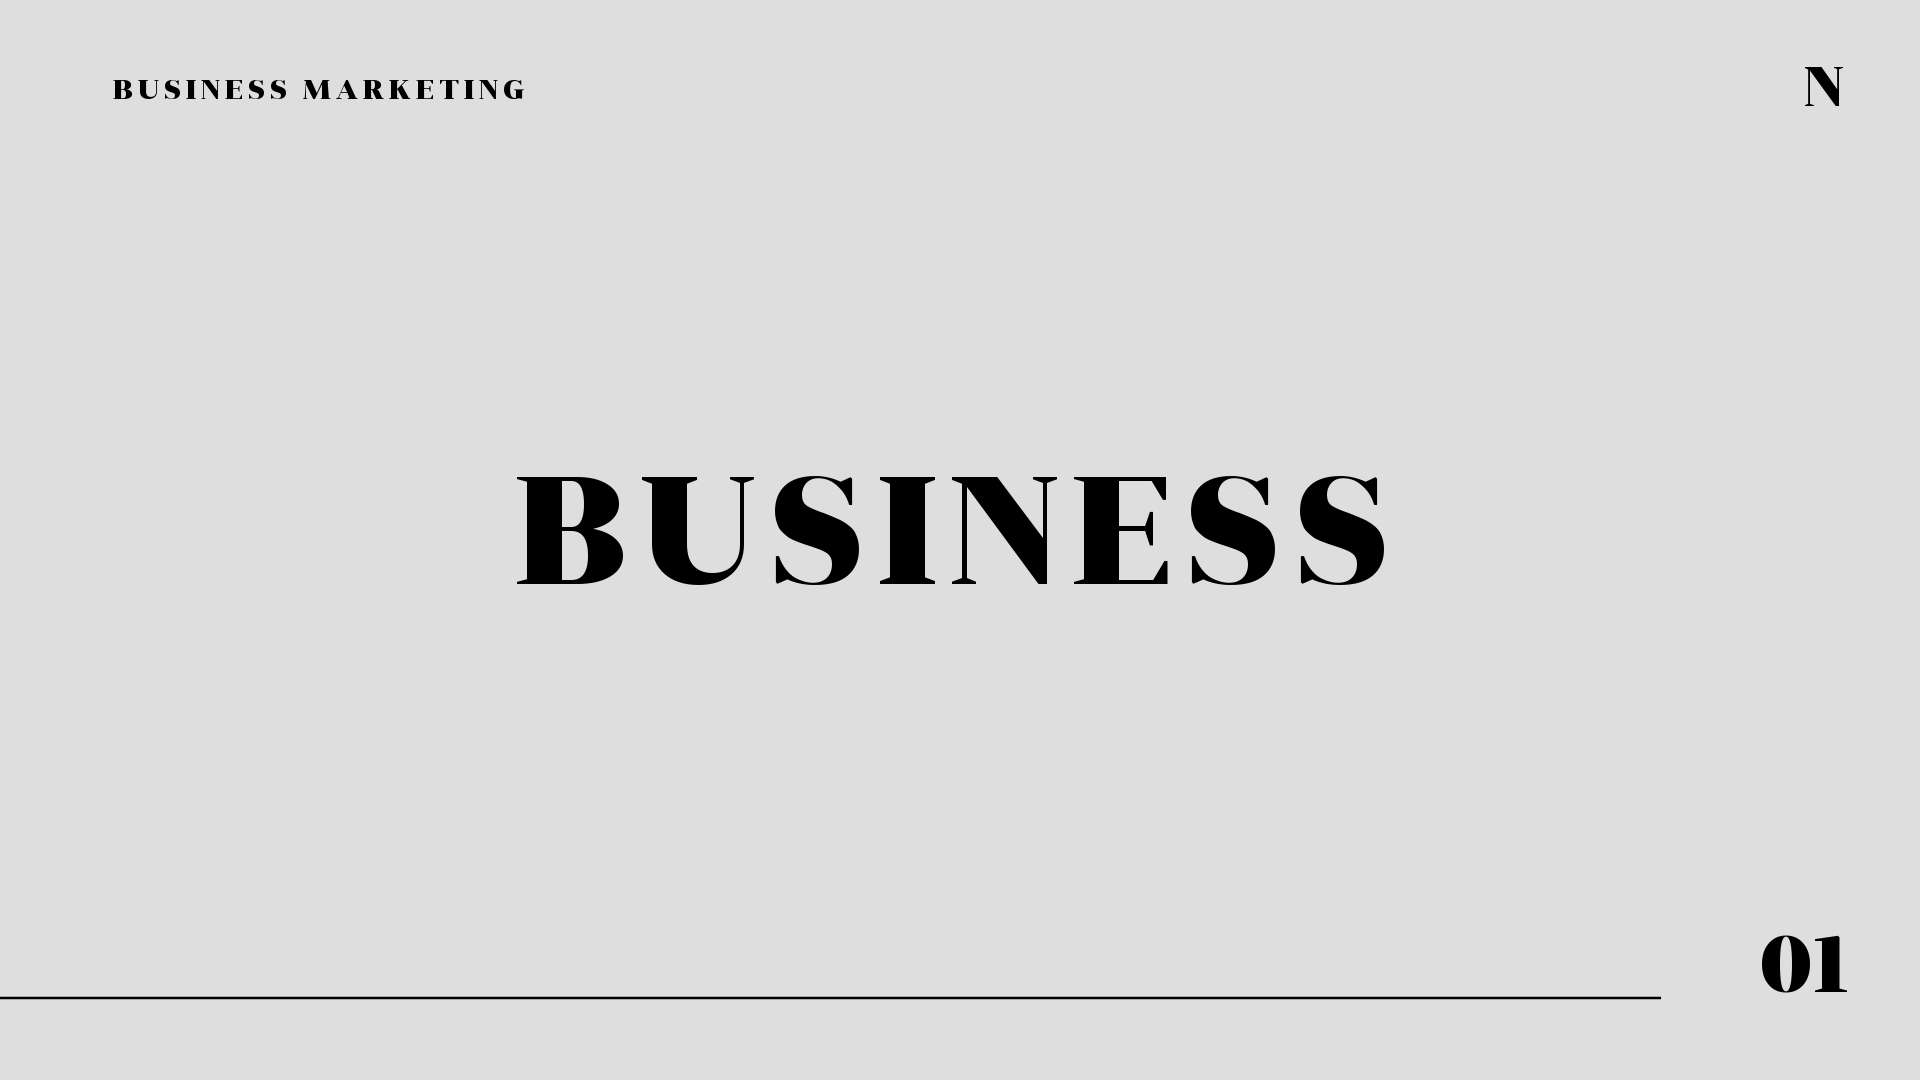 Стильная черно-белая обложка презентации для бизнеса с лаконичным шрифтом